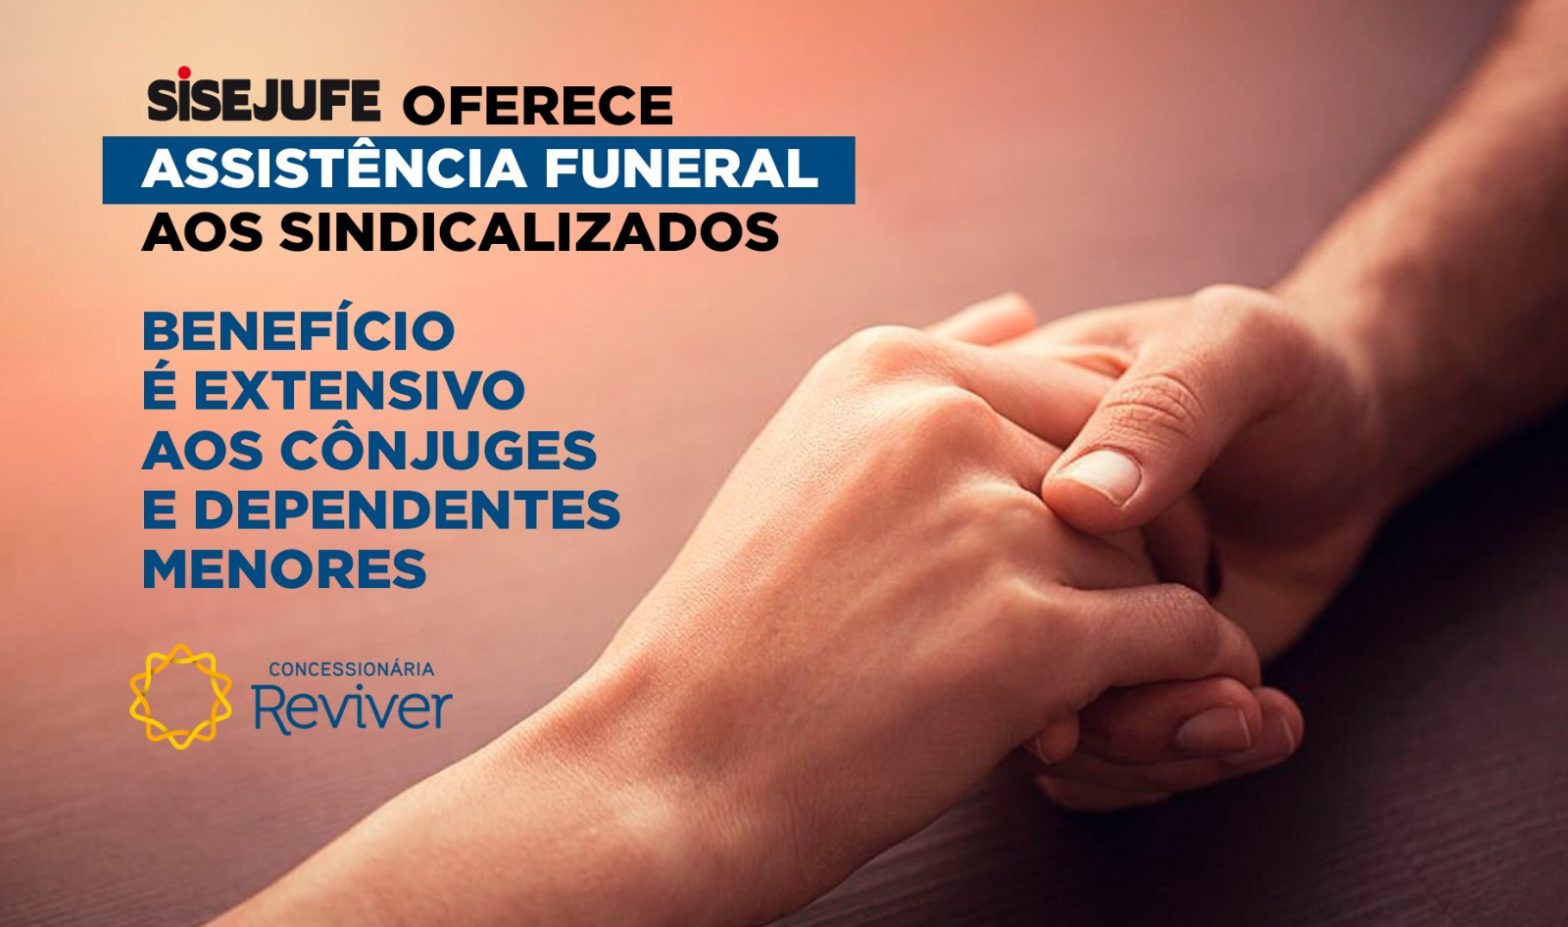 Assistência funeral: benefício é oferecido aos sindicalizados desde maio, SISEJUFE